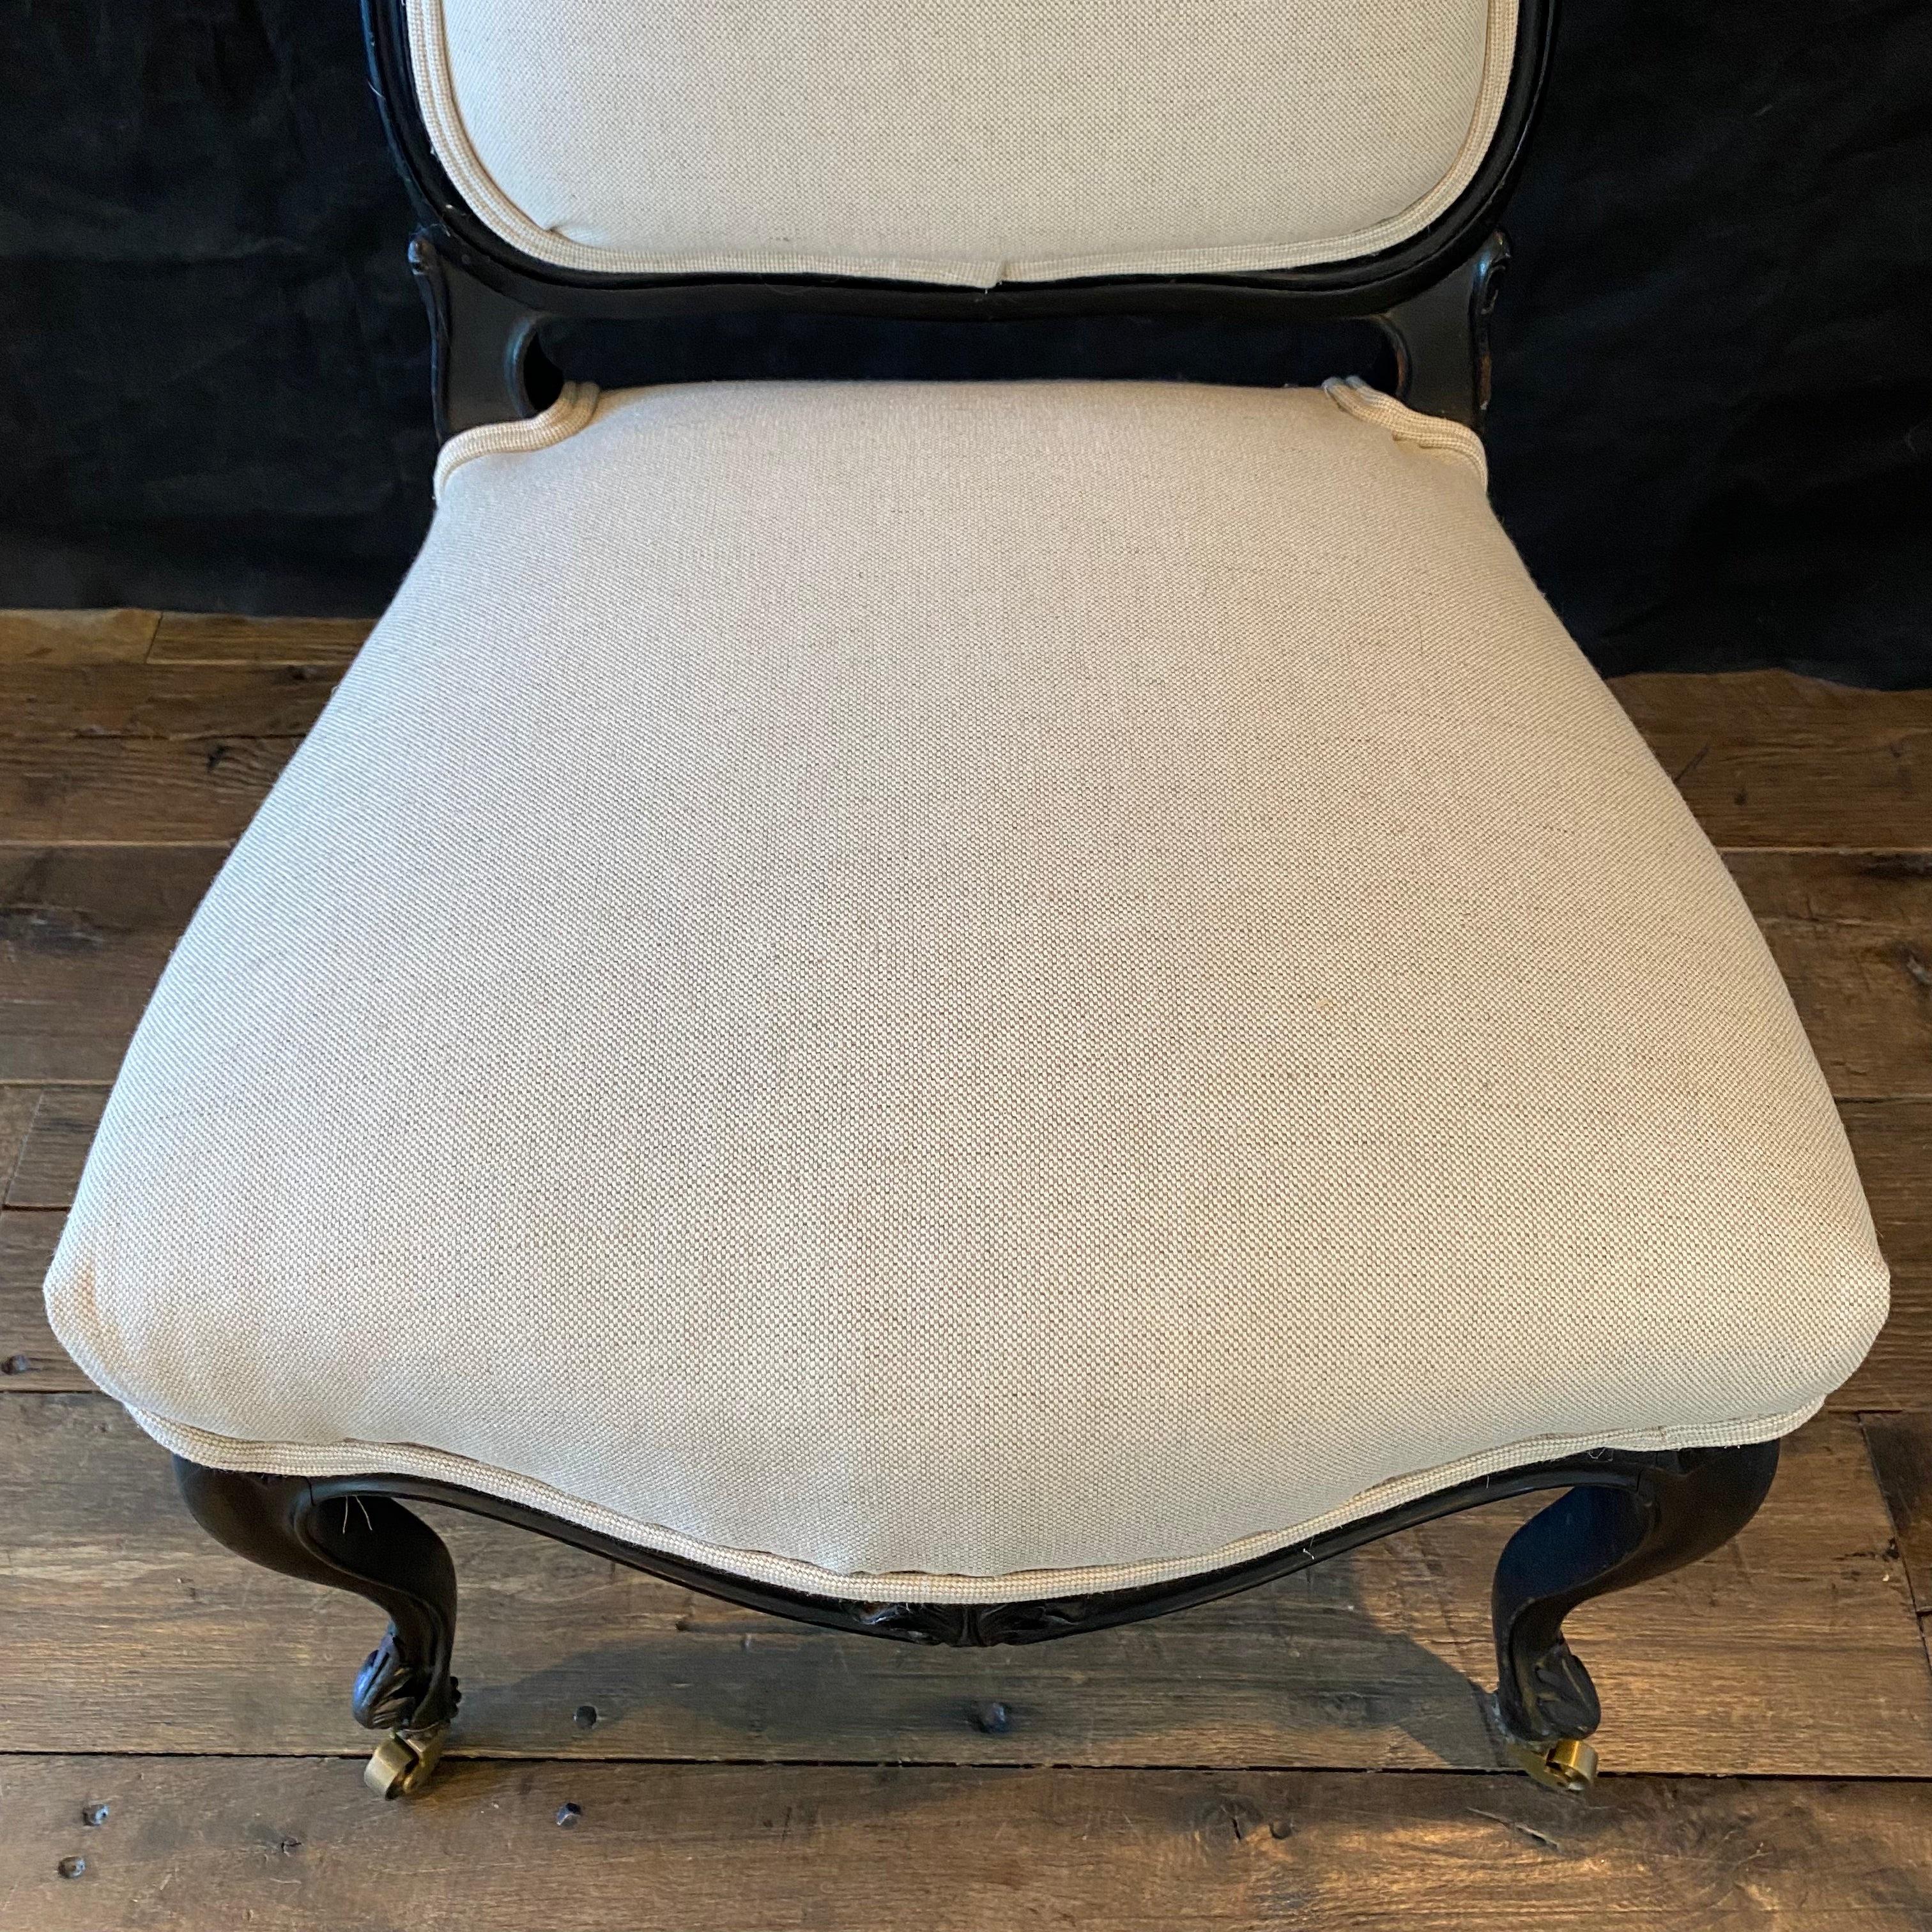 Schöner französischer Louis-XV-Stuhl aus Ebenholz, neu gepolstert in einer neutralen, hochwertigen britischen Leinen-Baumwollmischung. Es gibt Messingrollen auf der Vorderseite, komplizierte florale Schnitzerei auf der Schürze und zurück, und